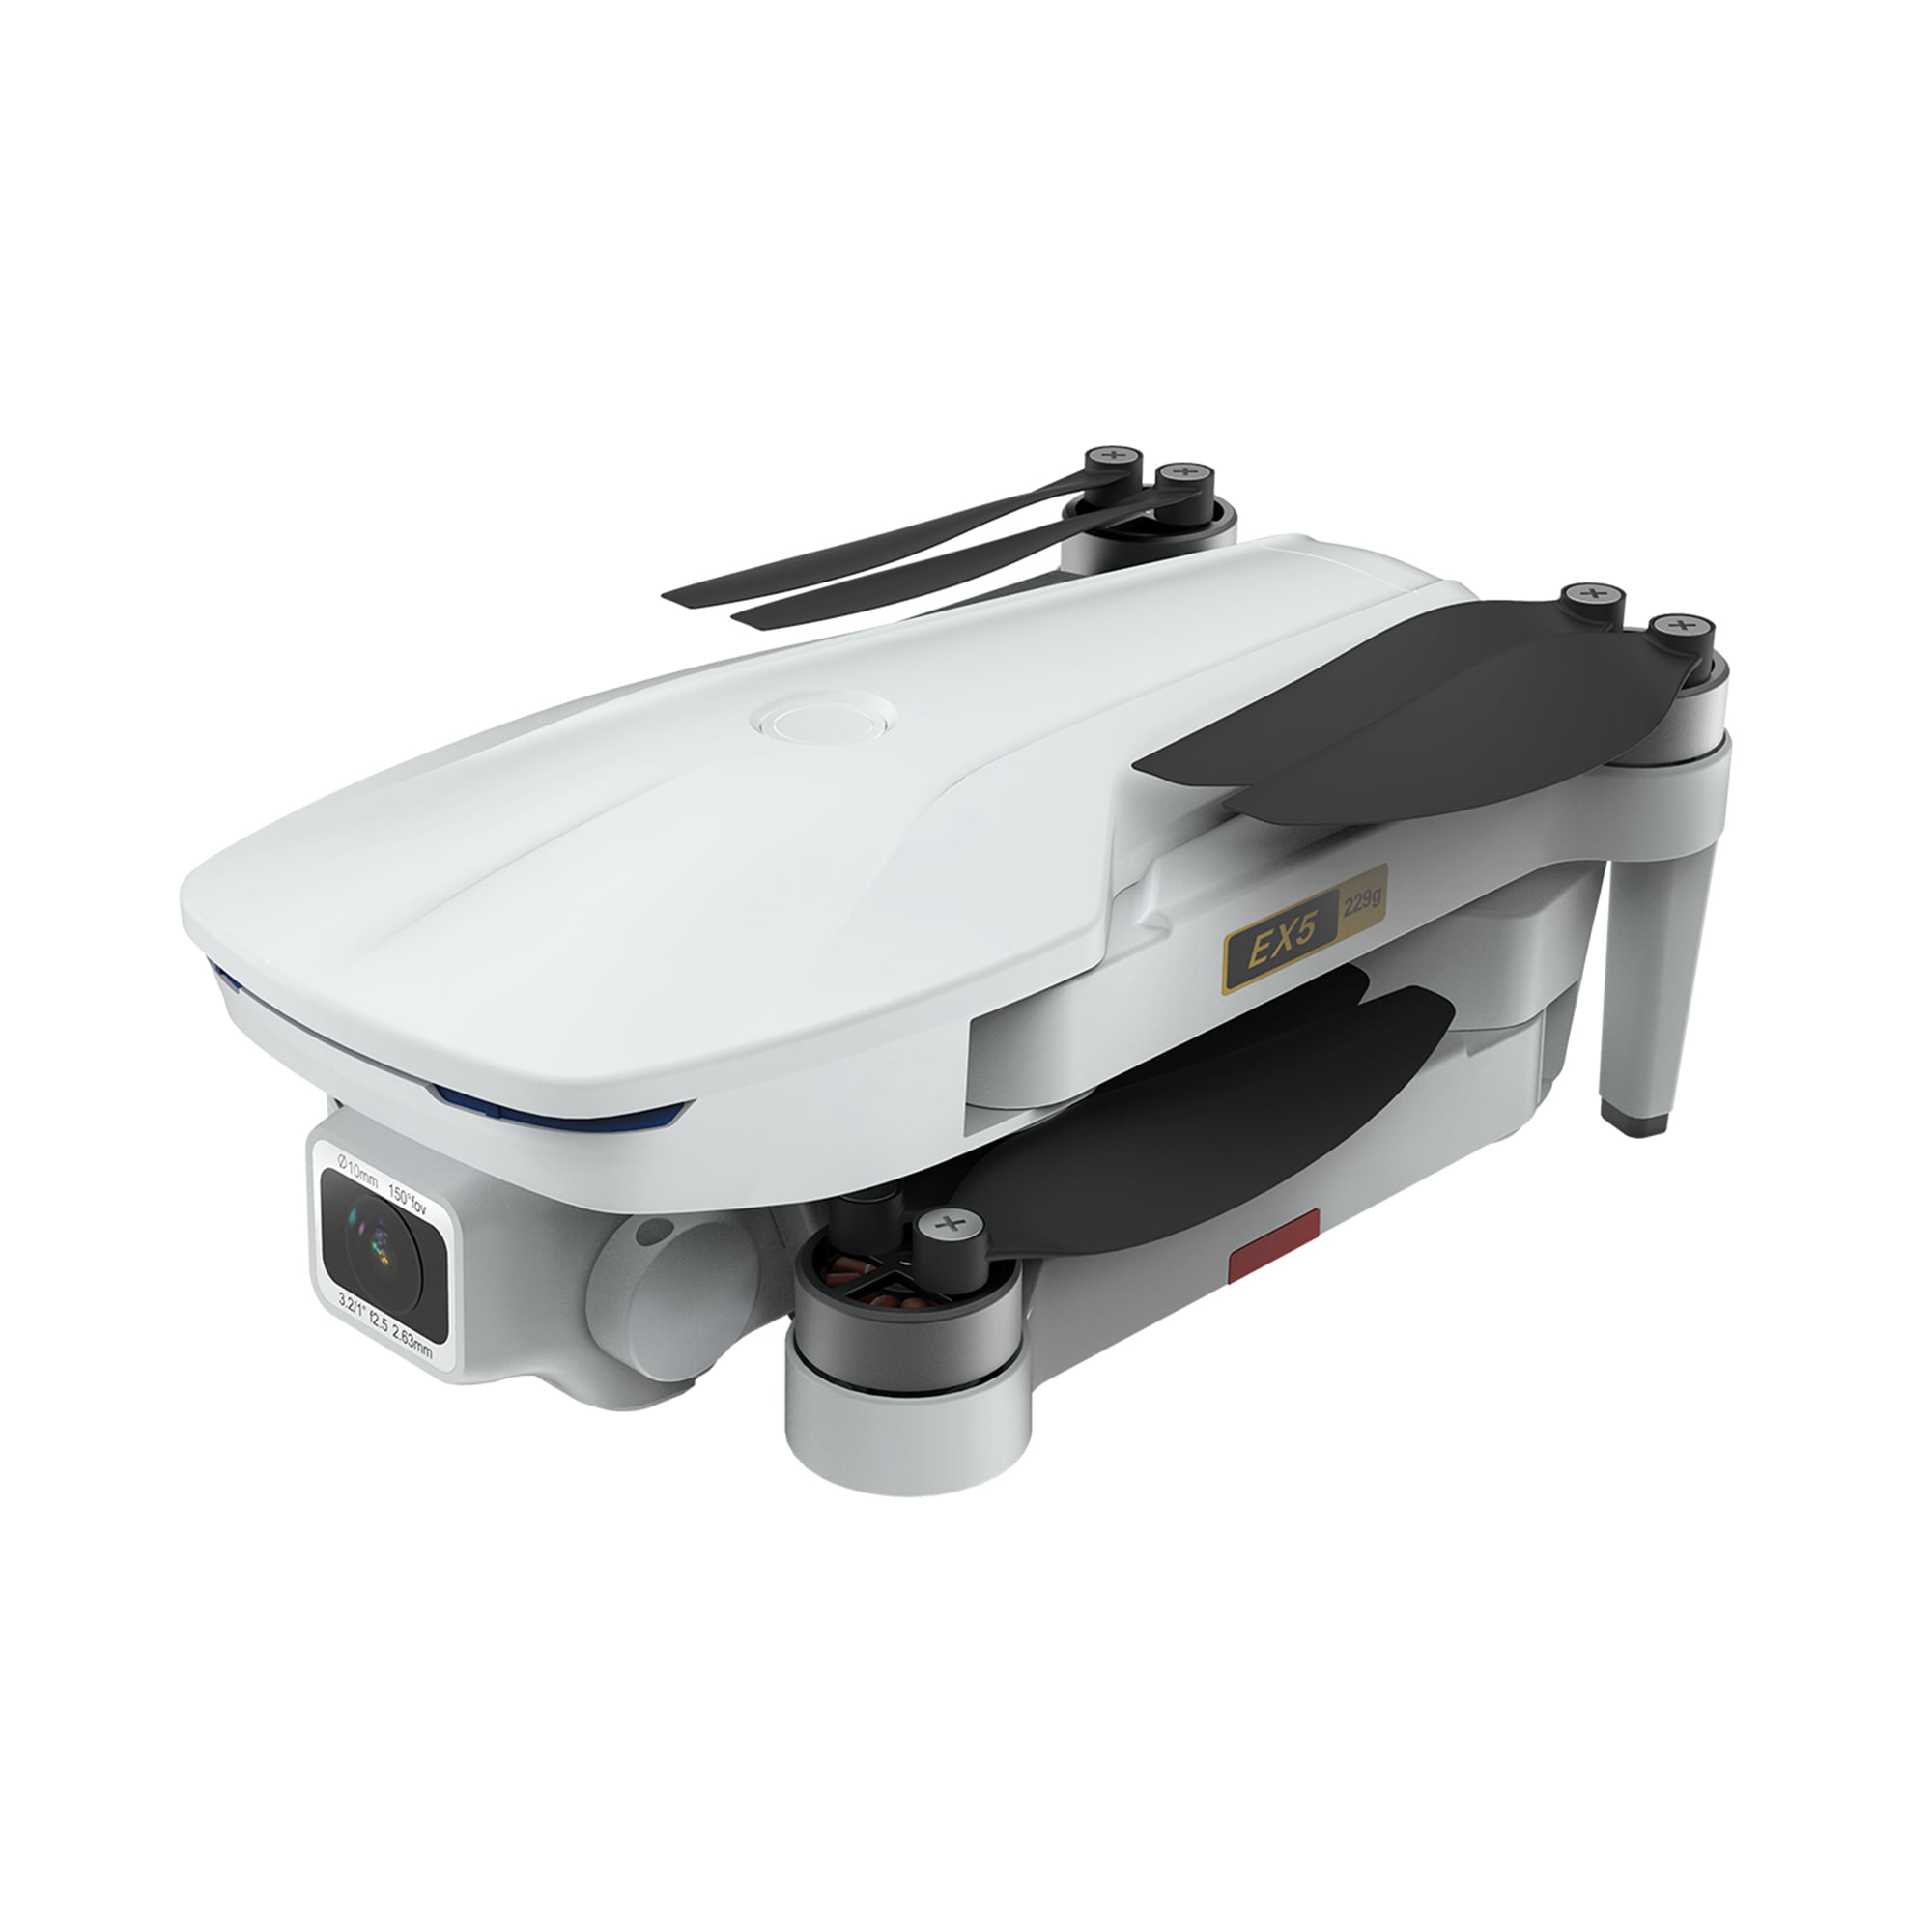 EACHINE EX5 Drone avec caméra 4K GPS 5G WiFi FPV 60 minutes Temps de vol Brushless 229 g Ultra léger Mode Suivi Retour automatique Détection gestuelle Positionnement optique Drone dentrée 